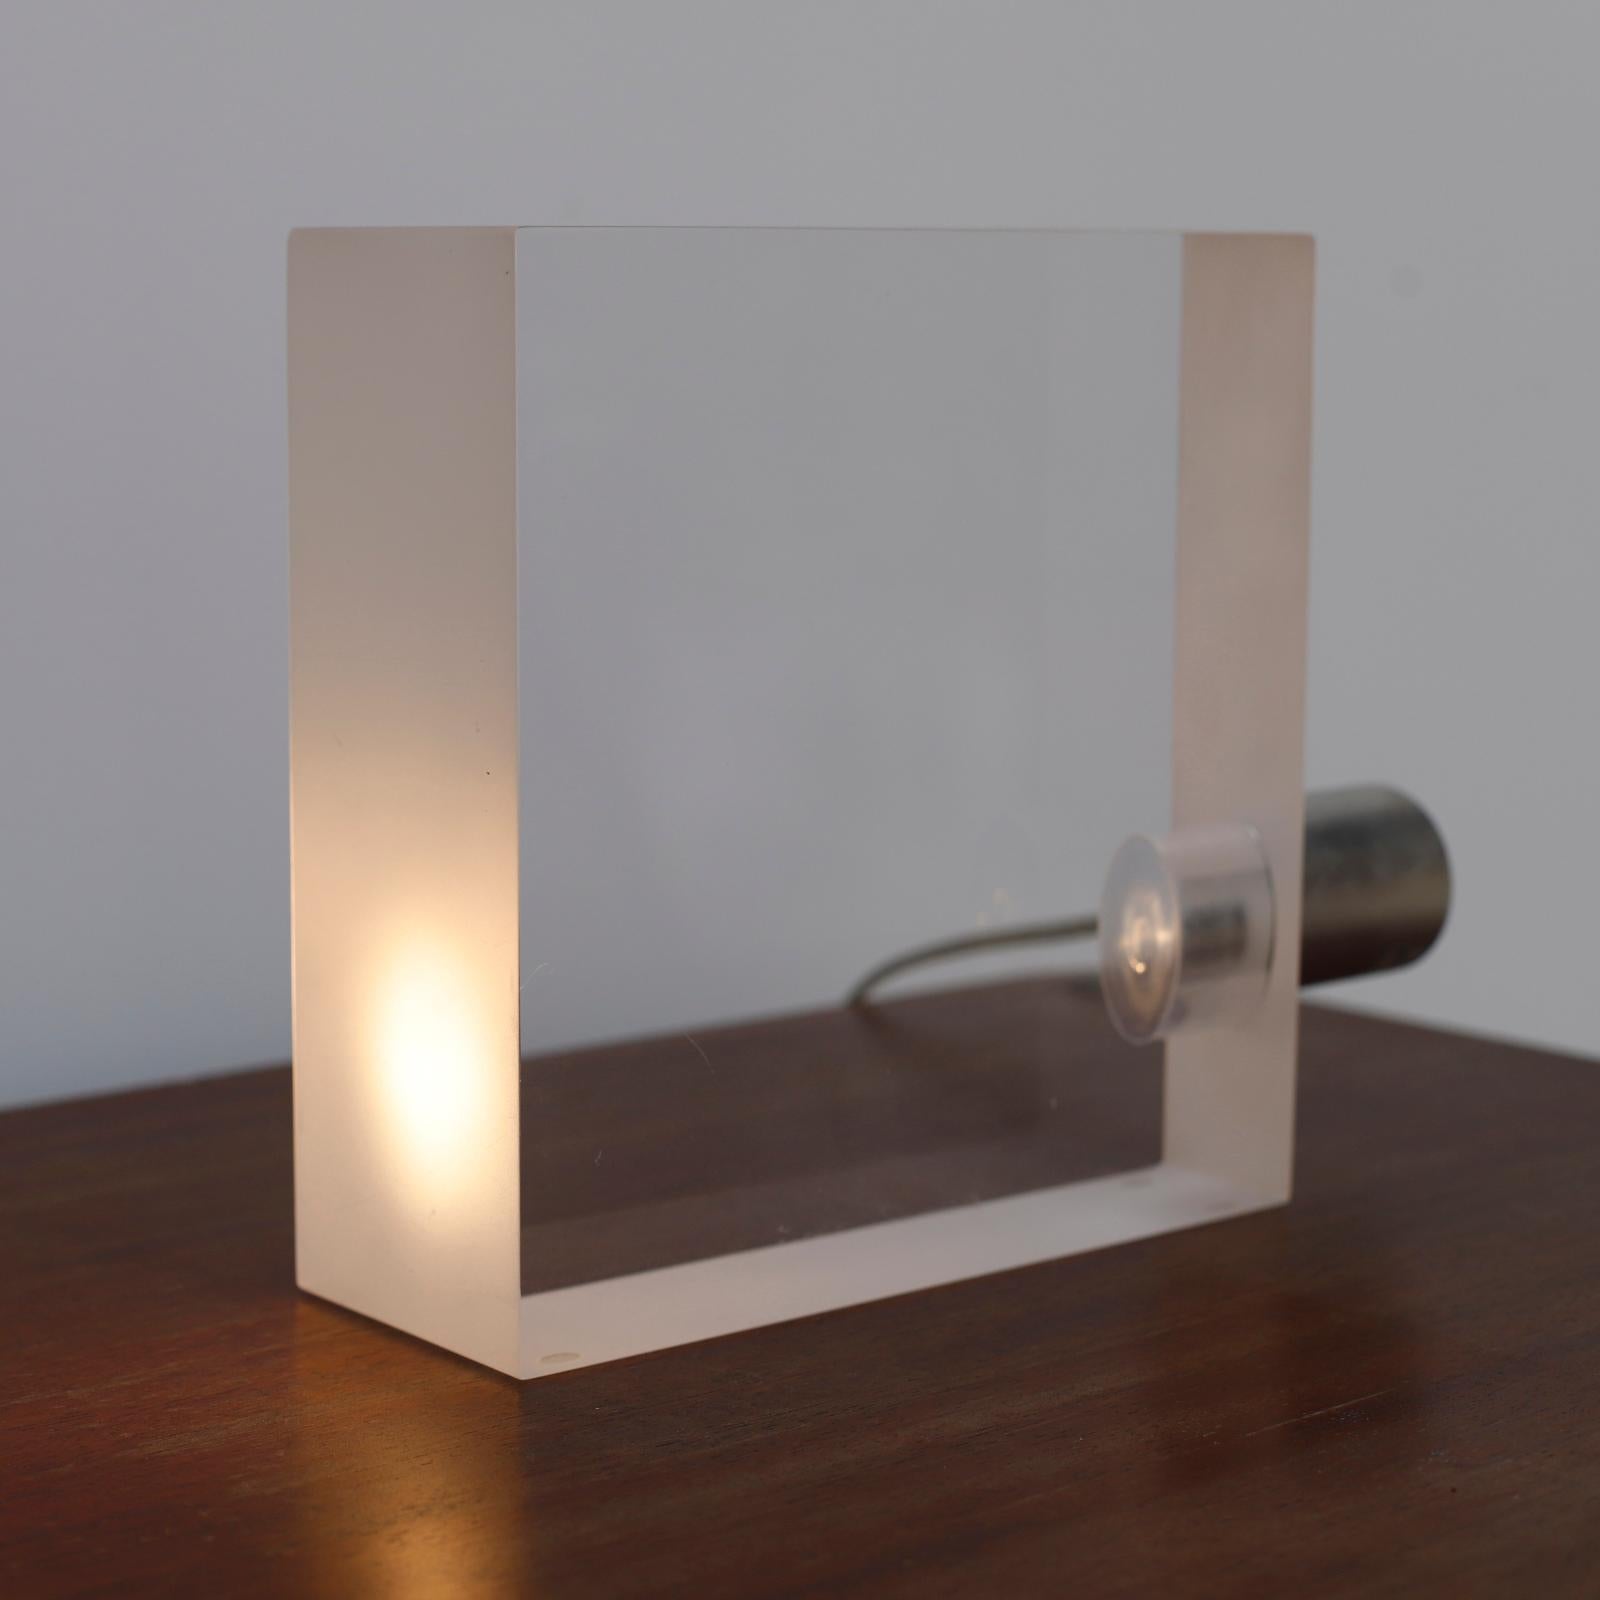 Minimalist ToFU Small Table Lamp by Tokujin Yoshioka